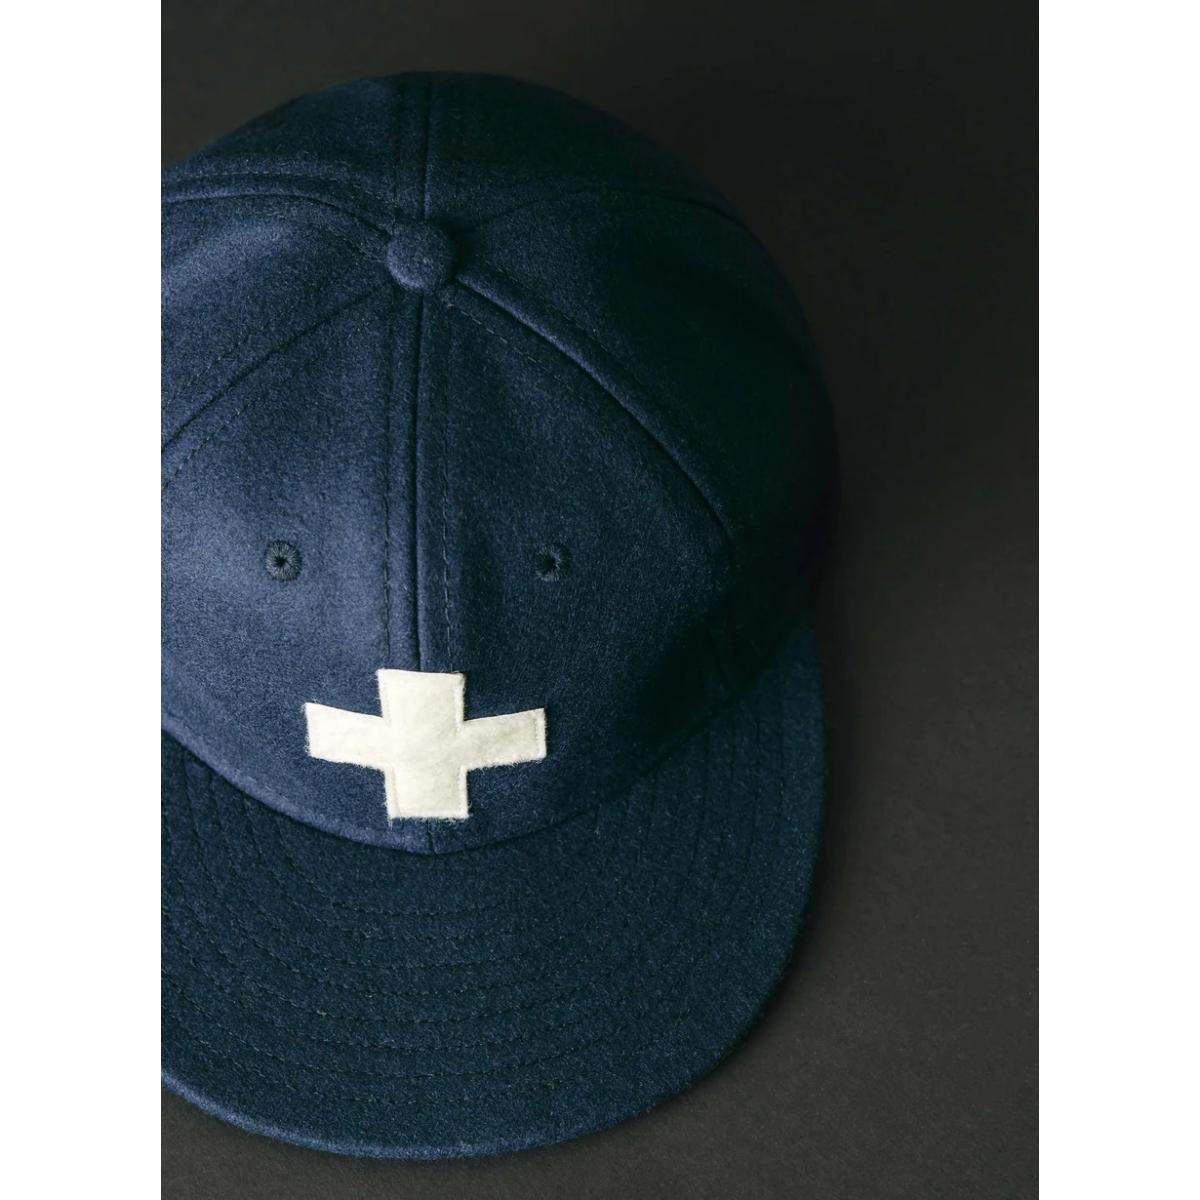 Plus Cap - Hat